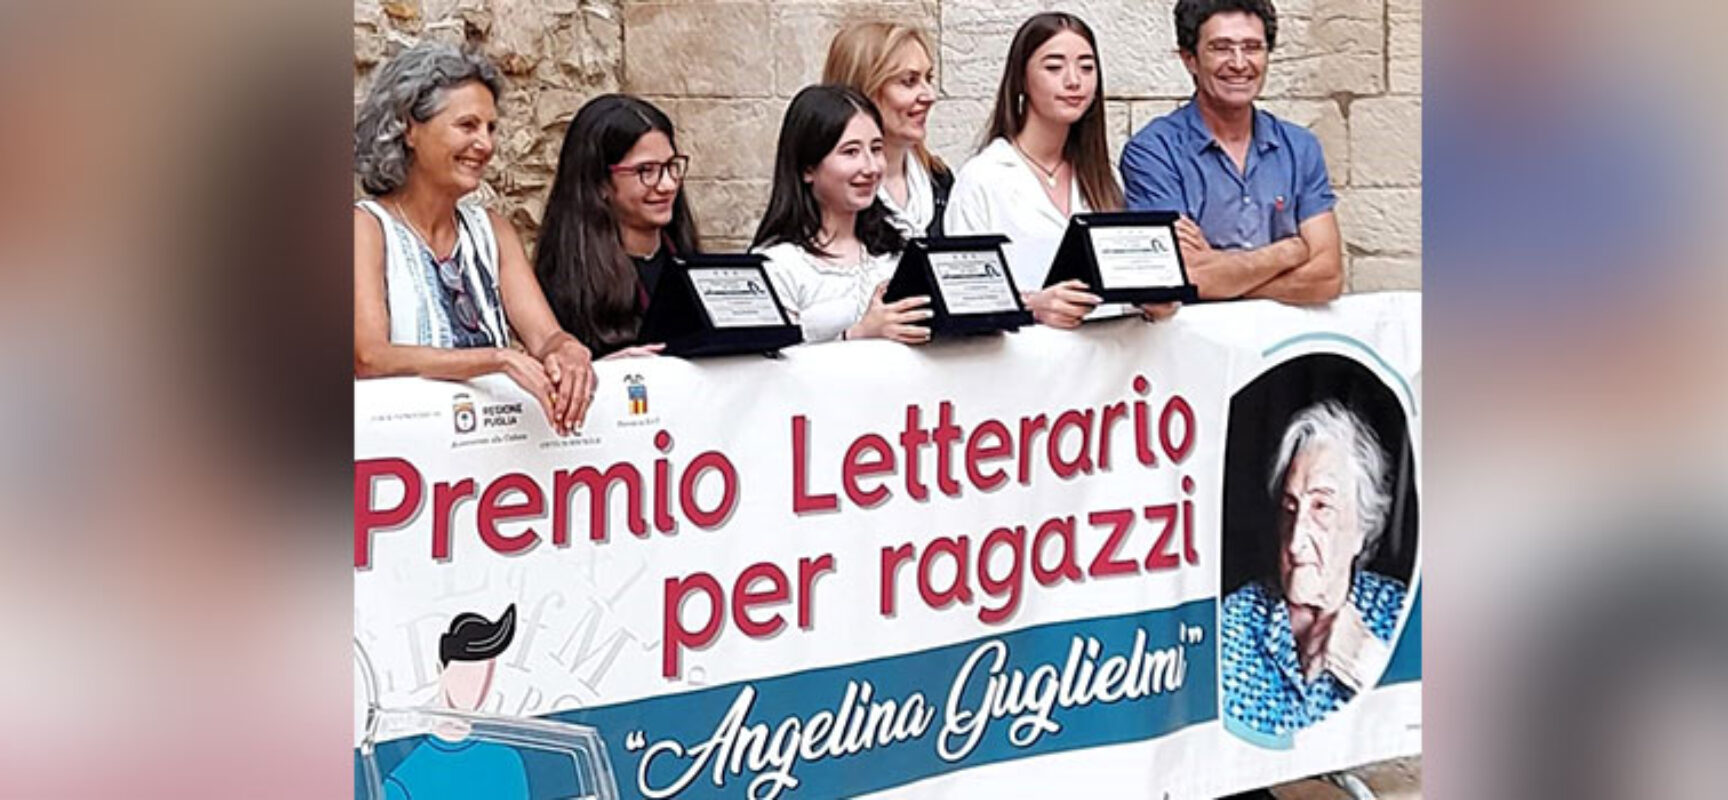 Premio Letterario “Angelina Guglielmi”, la giuria pronta ad esaminare i componimenti in gara